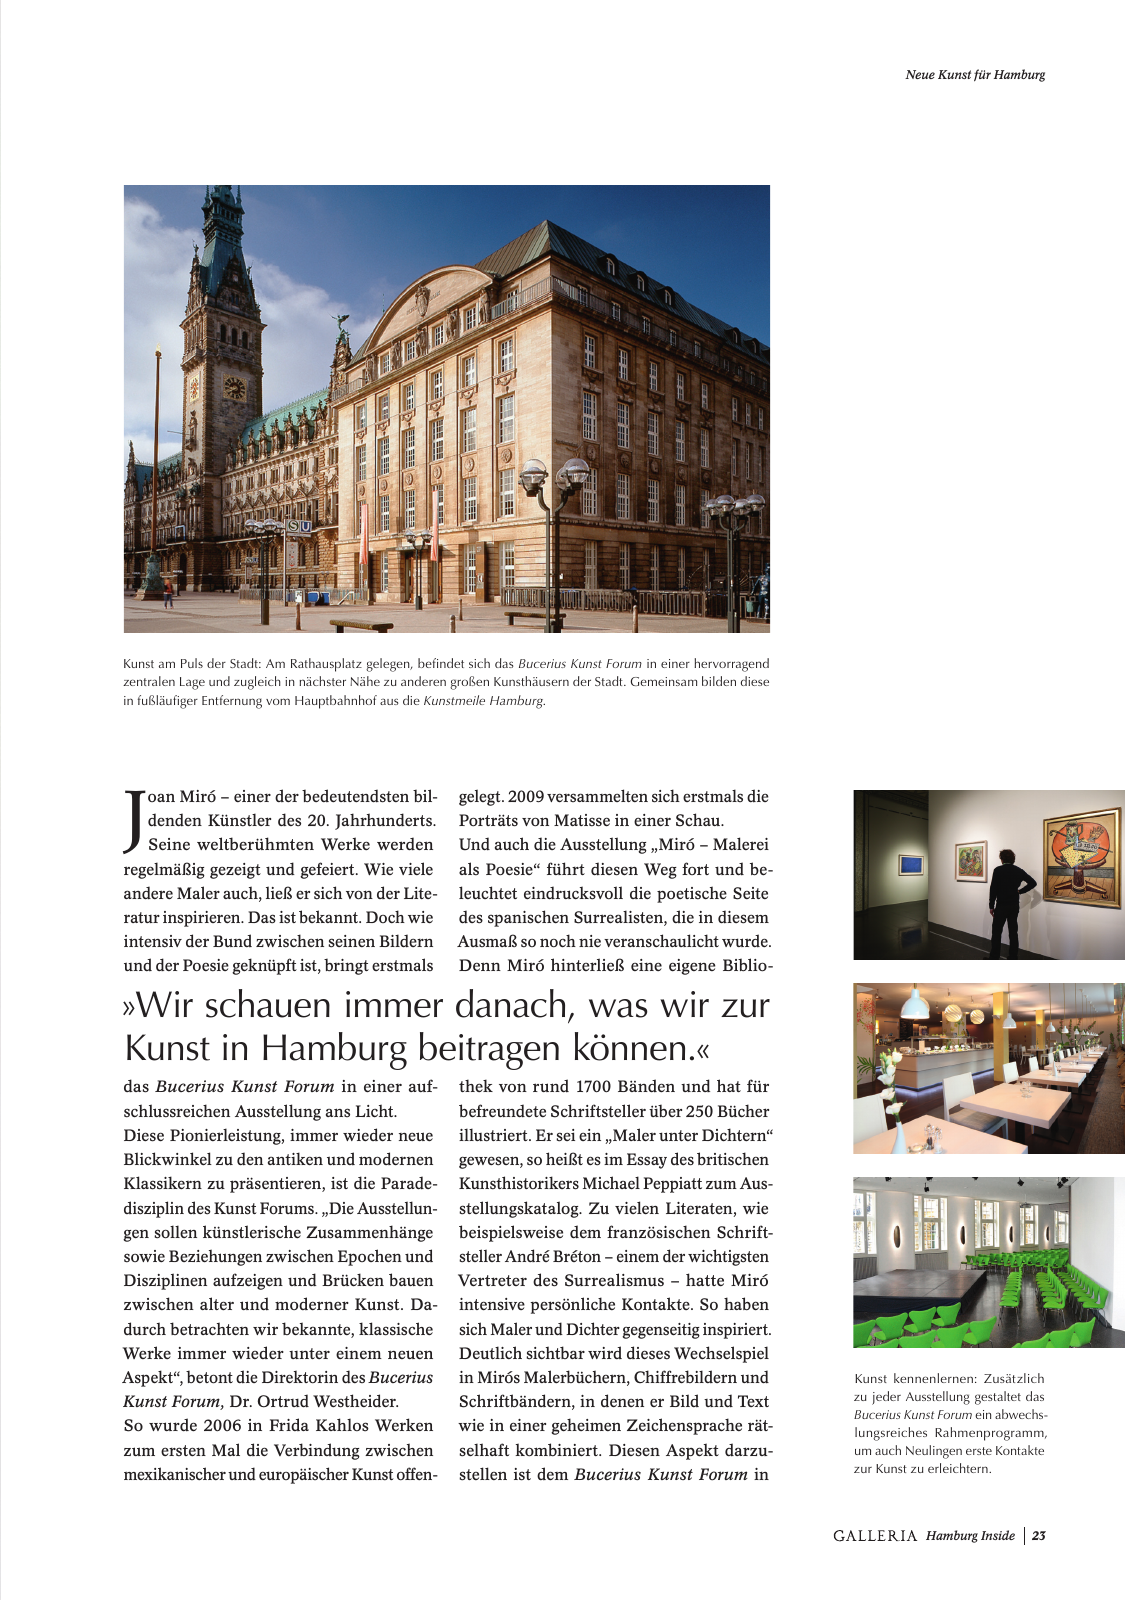 Vorschau GALLERIA Magazin Hamburg Inside 2 Seite 23